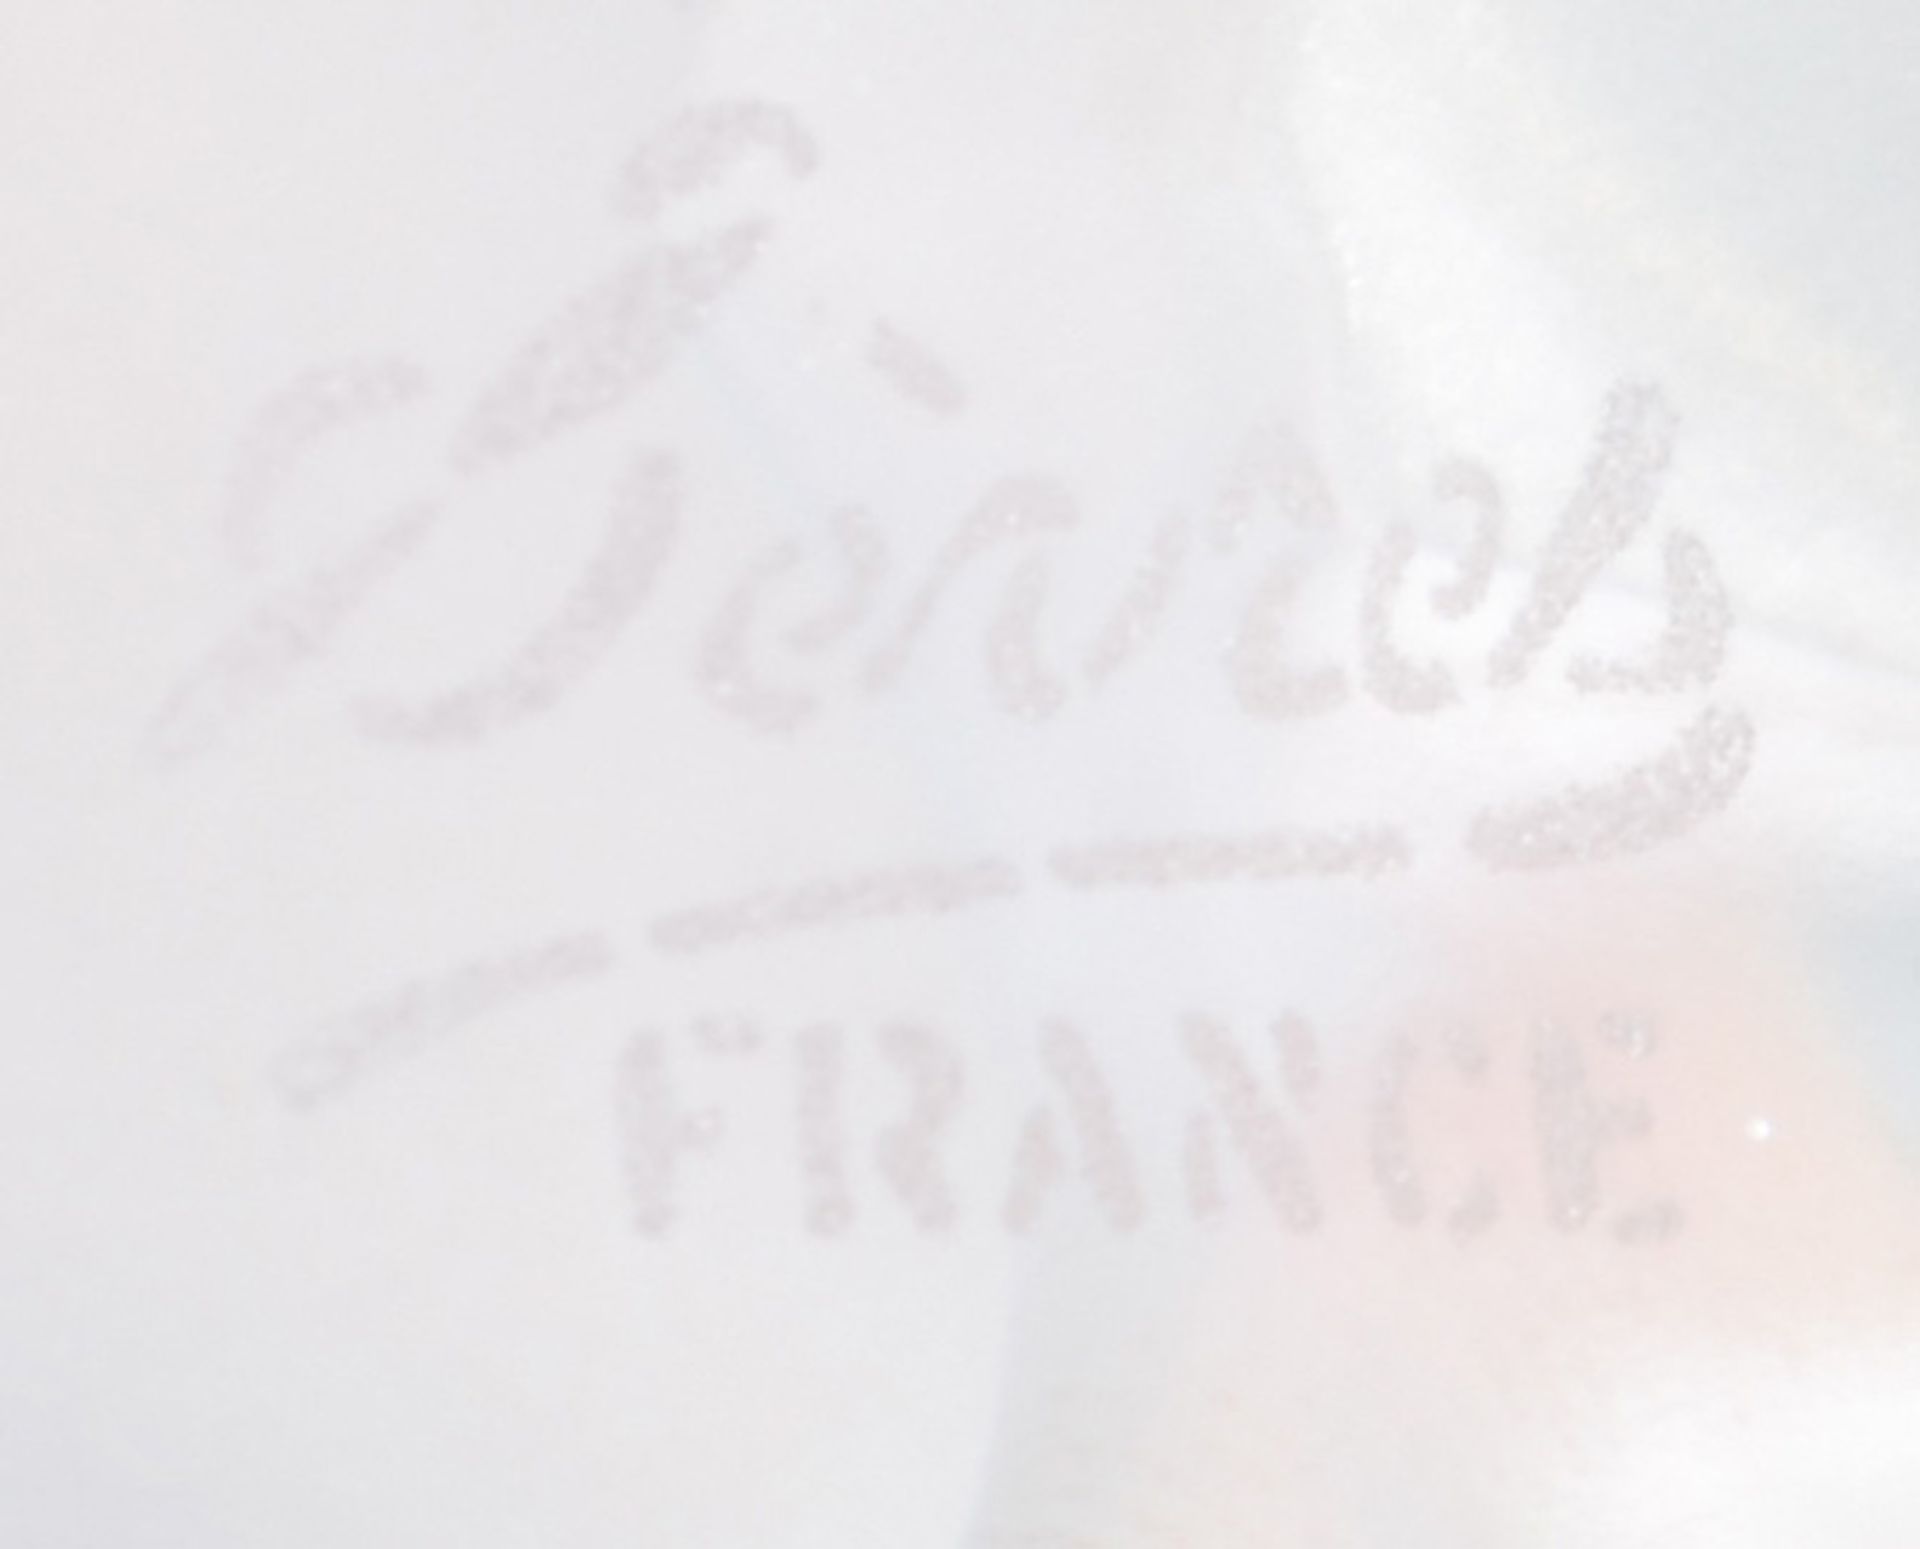 Eule. Sèvres 20. Jh. Farbloses opakes Satin-Kristall, am Boden Ätzsignatur „Sèvres FRANCE“, H=11,6 - Image 2 of 2